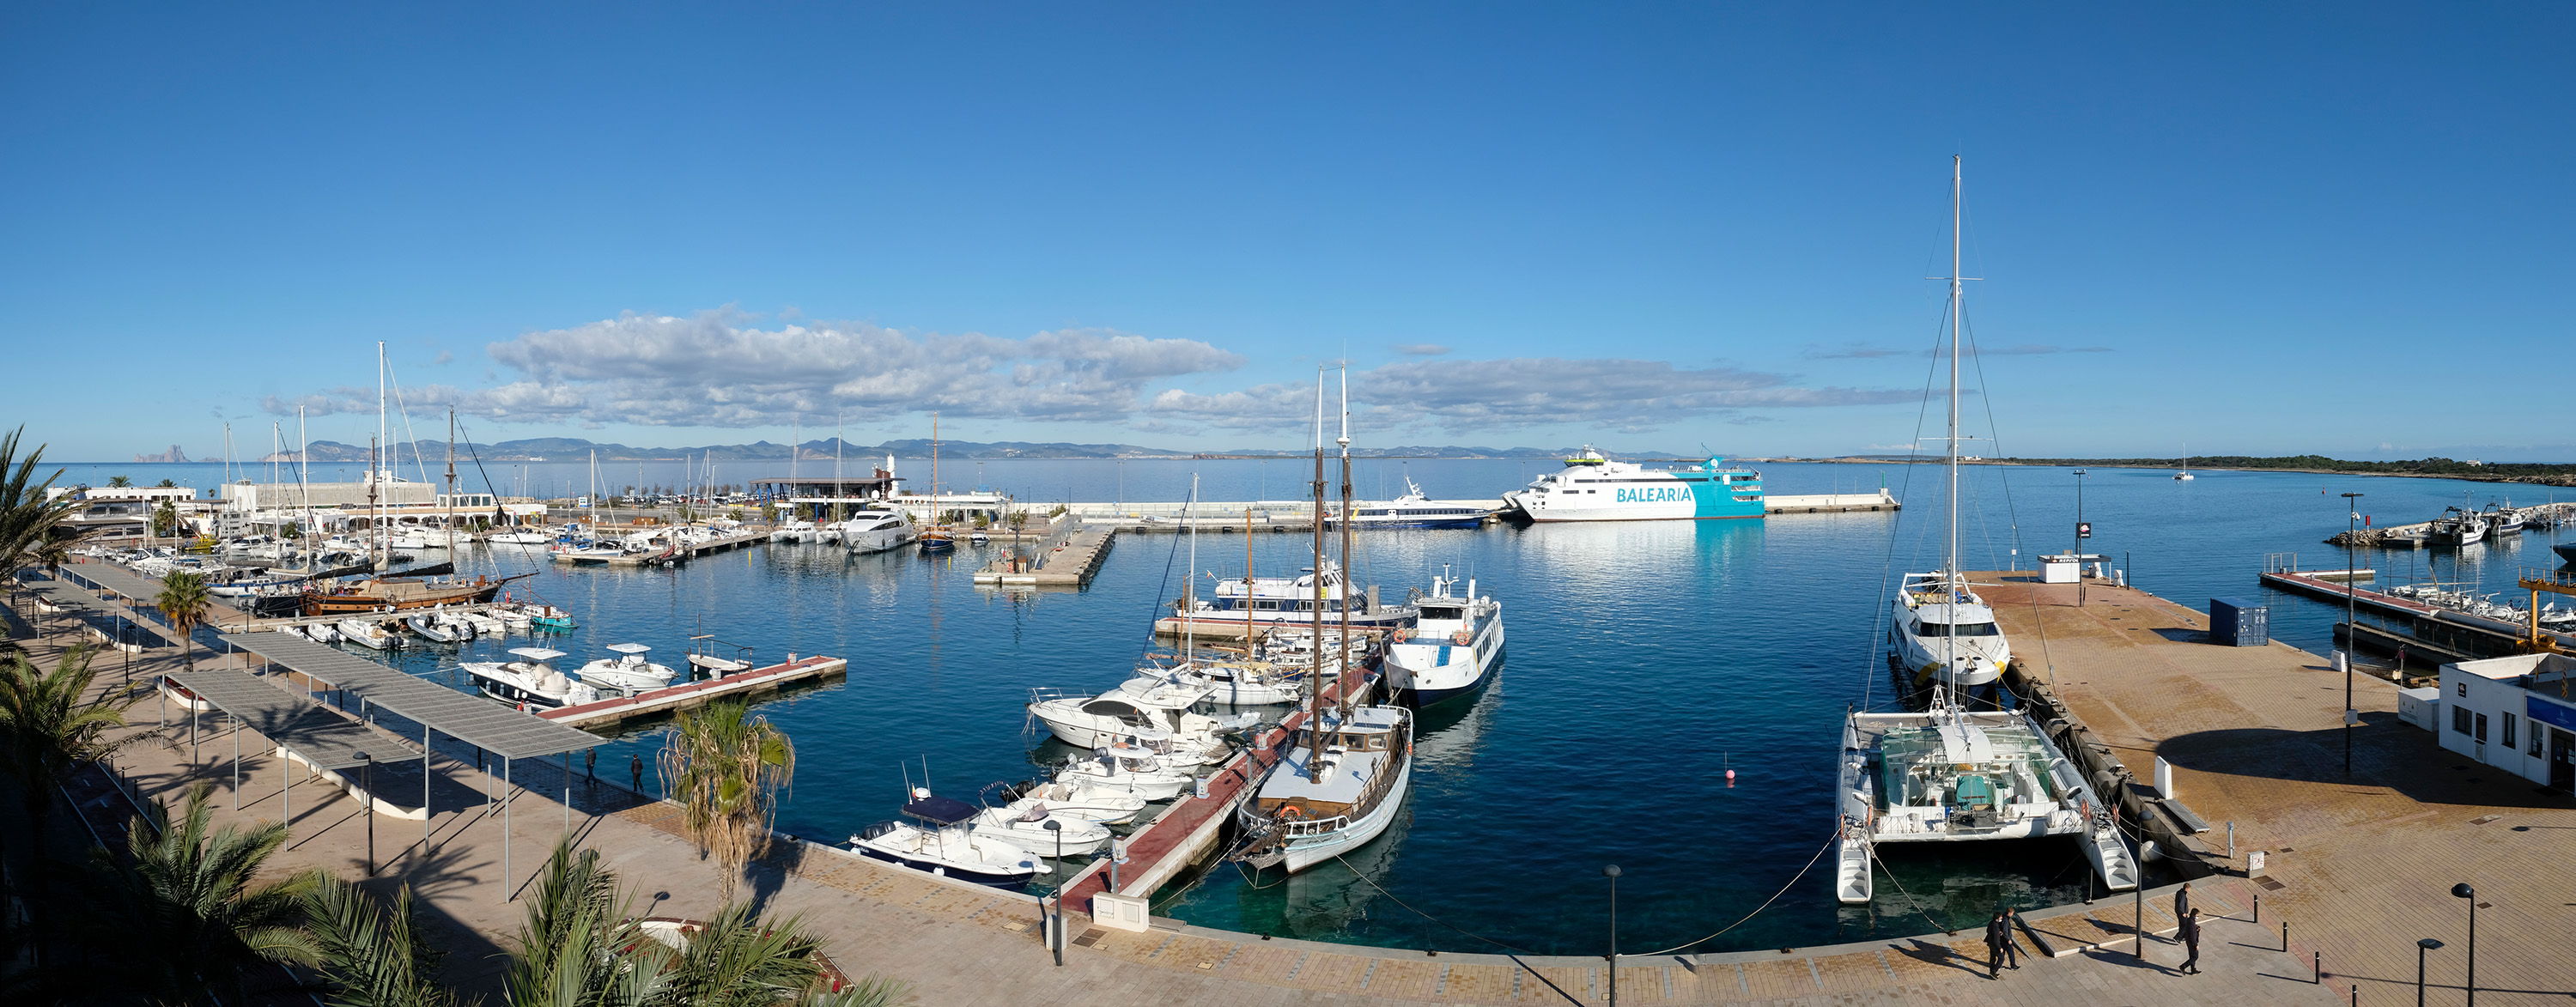 Die APB wird das Levante-Nebendock des Hafens von La Savina in Besitz nehmen und für den Betrieb von Ausflugsbooten nutzen